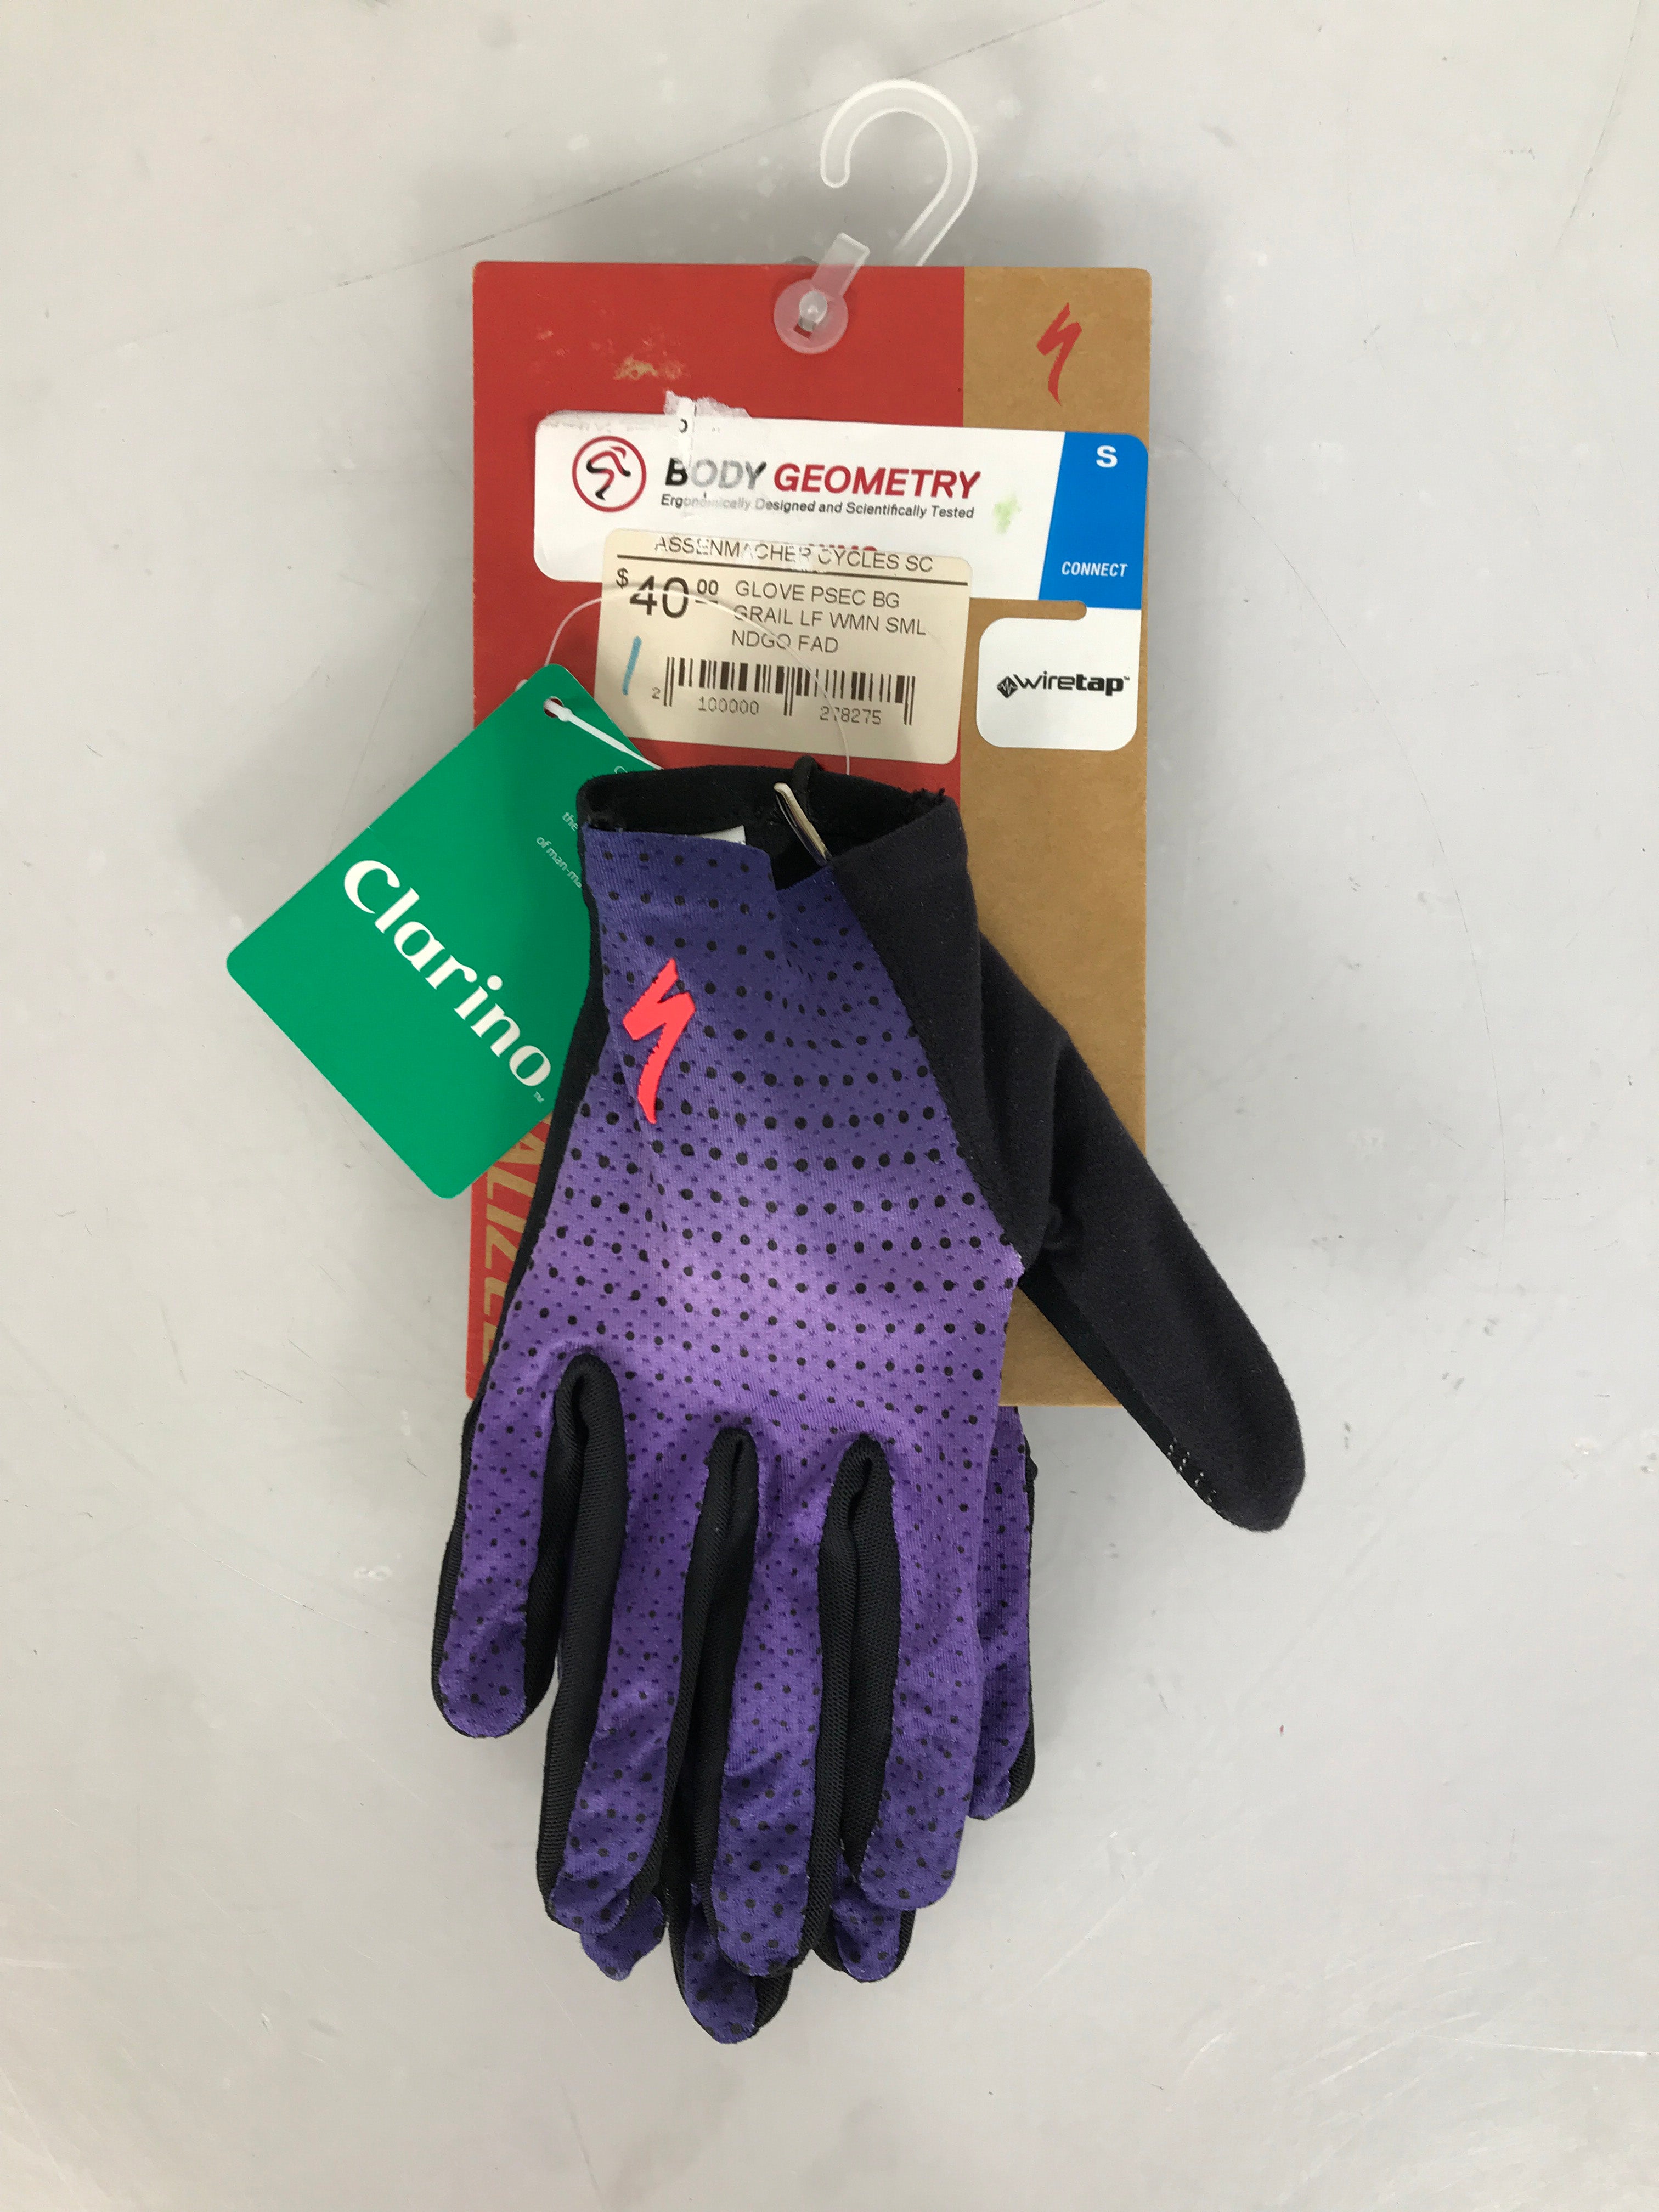 Specialized Body Geometry Cyclist Gloves with Wiretap Women's Size S NWT